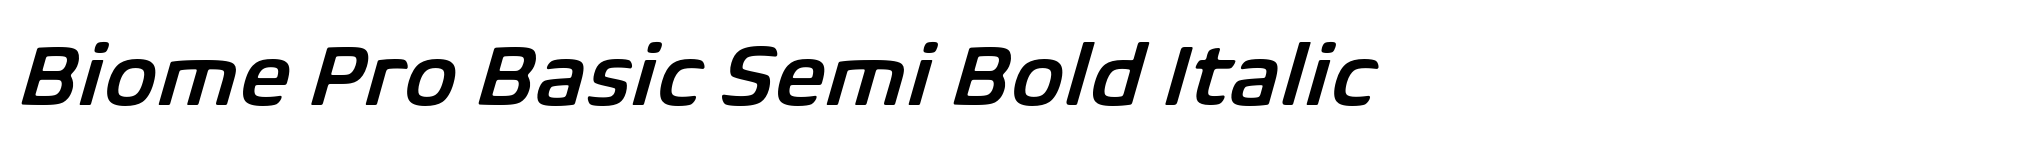 Biome Pro Basic Semi Bold Italic image